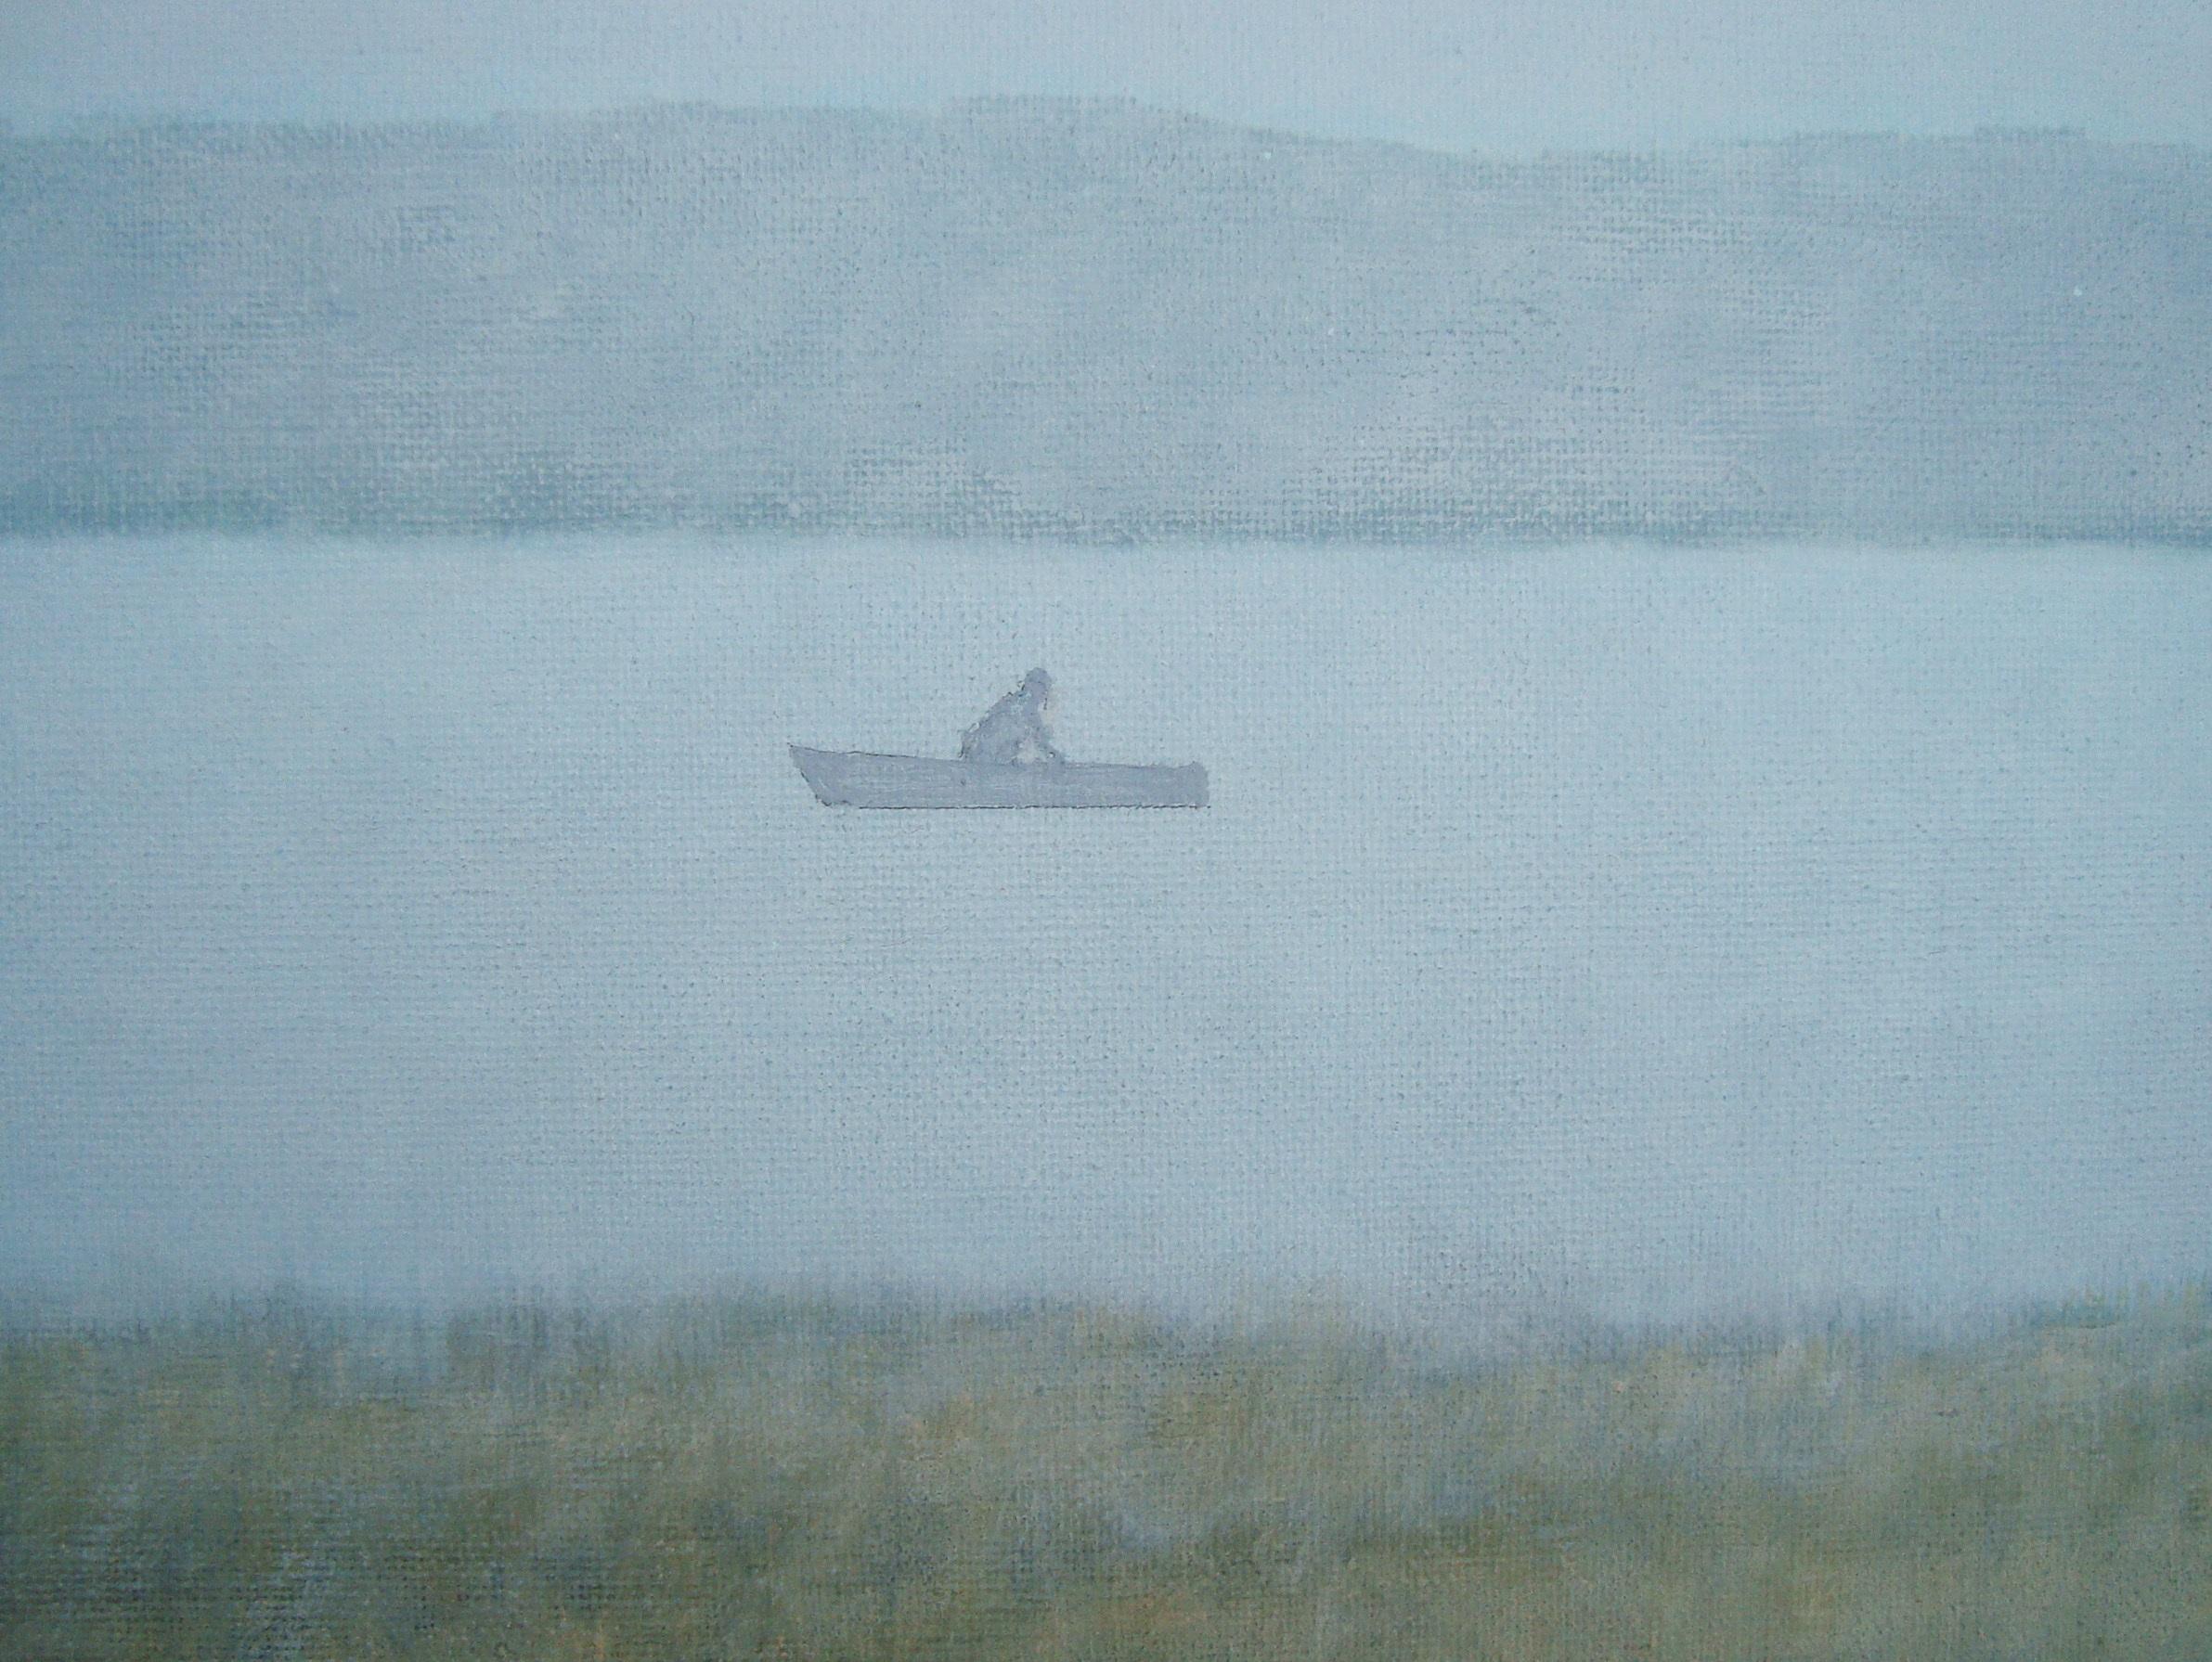 Überall Nebel und fast keine Details - aber ein Blick auf die Sonne.

Über den Künstler:

Die Gemälde von Bjarne Dahl sind realistisch und figurativ, inspiriert von Landschaften, Menschen und Gebäuden. Die Farben sind oft gedämpft, mit einem